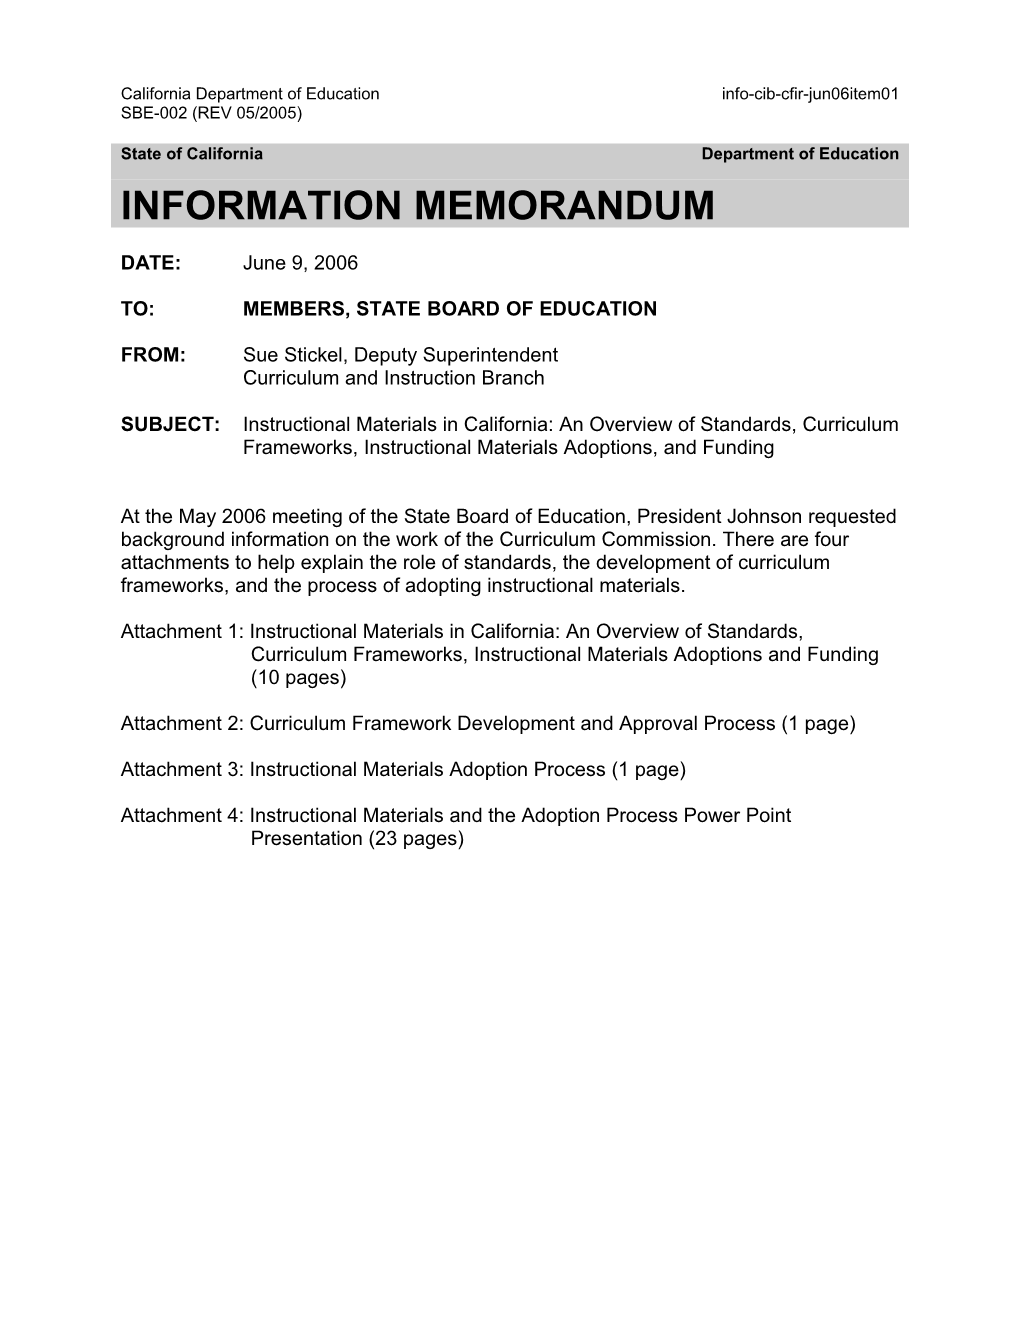 June 2006 CFIR Item 01 - Information Memorandum (CA State Board of Education)